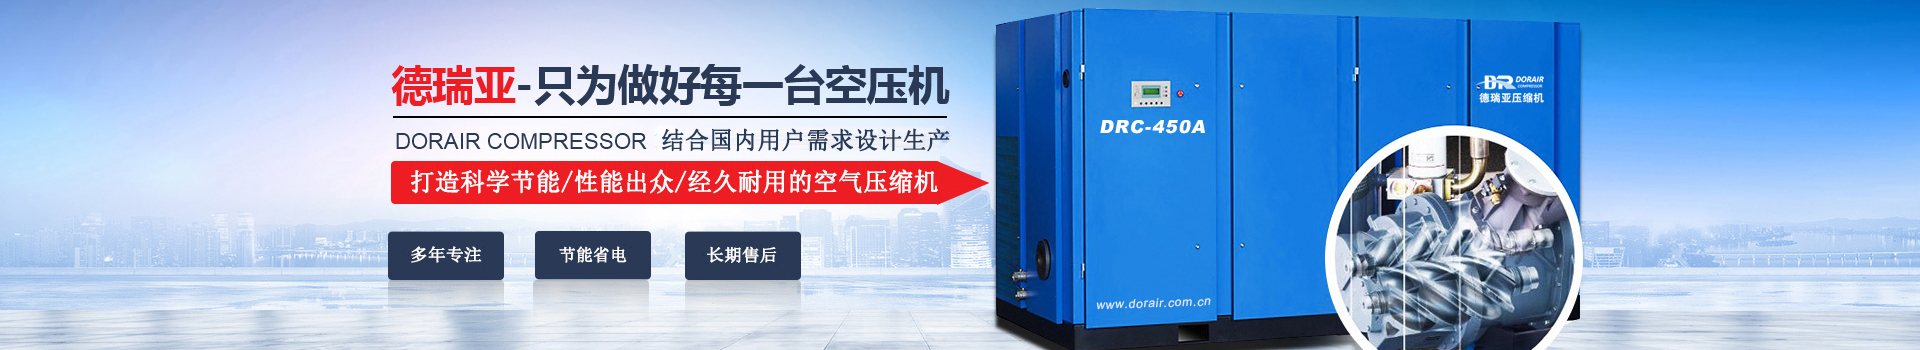 德瑞亞空壓機，中國高品質空壓機倡導者